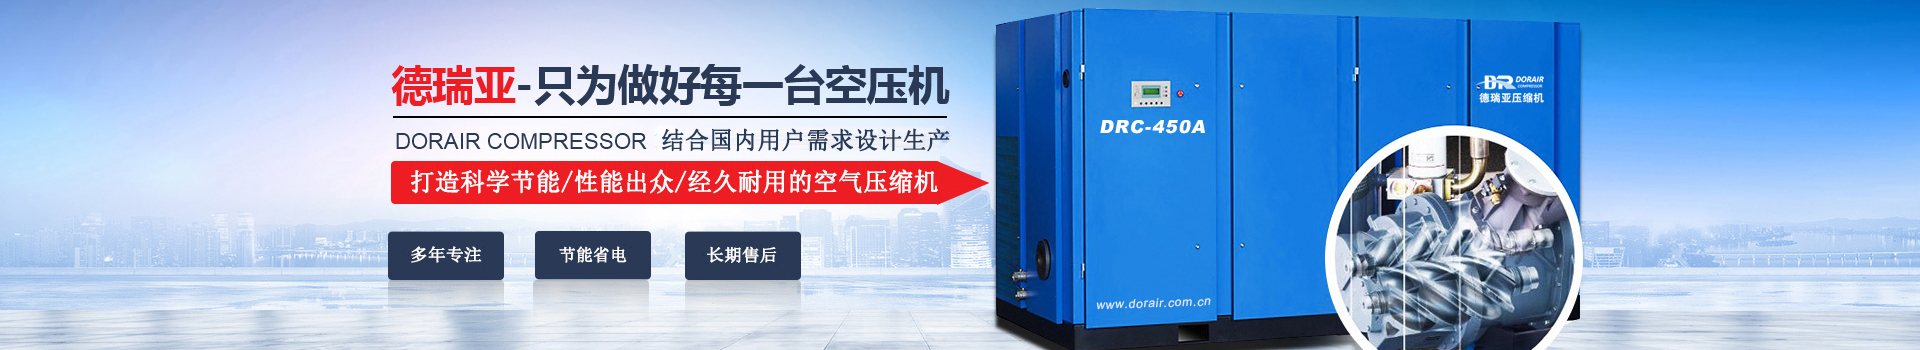 德瑞亞空壓機，中國高品質空壓機倡導者